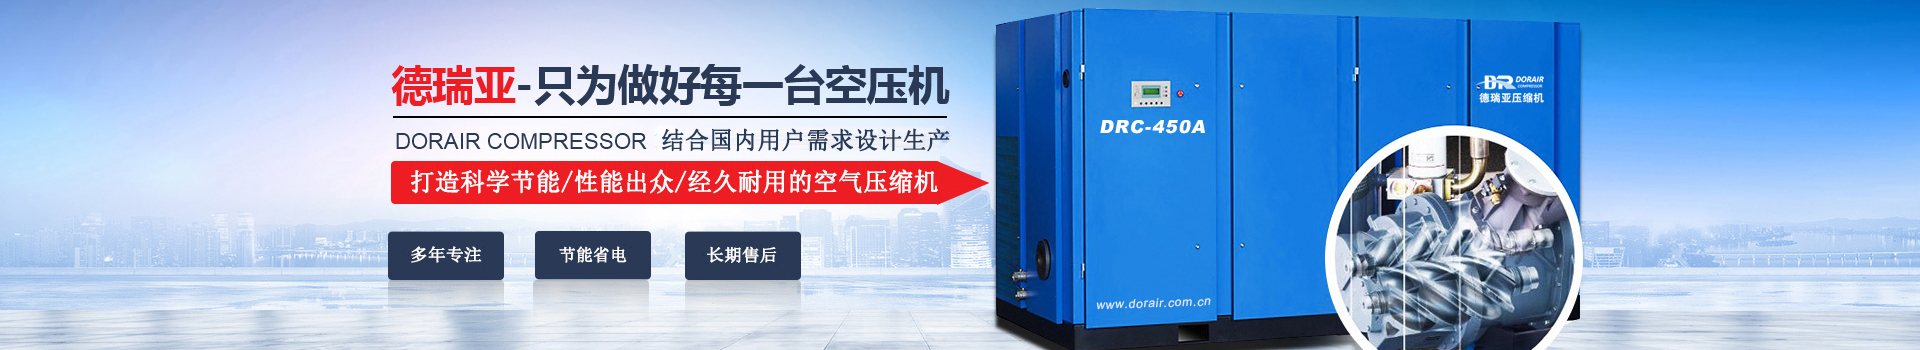 德瑞亞空壓機，中國高品質空壓機倡導者